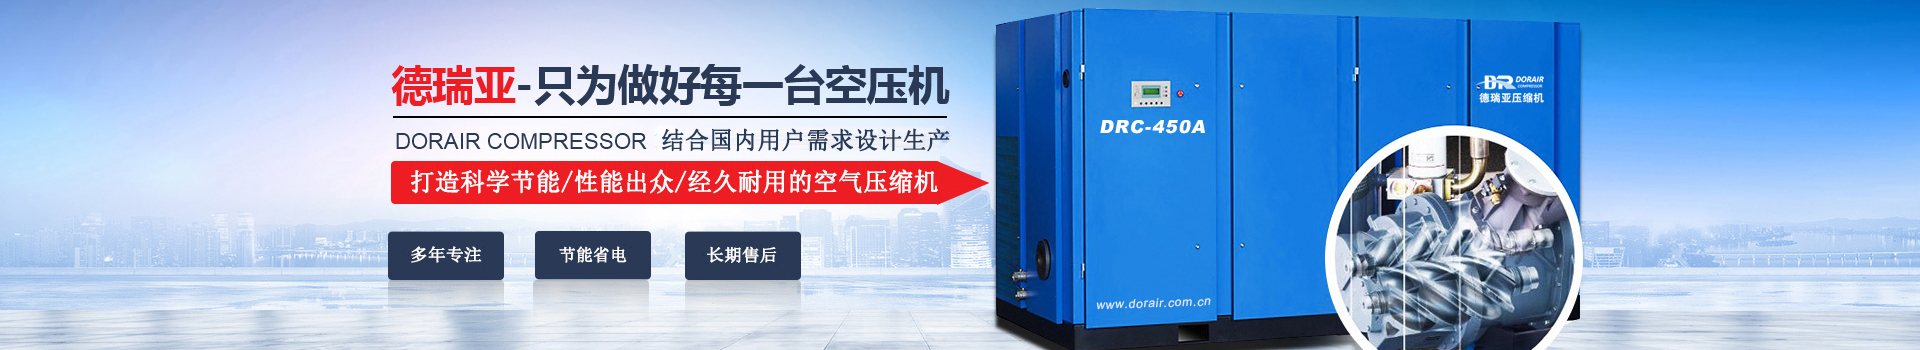 德瑞亞空壓機，中國高品質空壓機倡導者